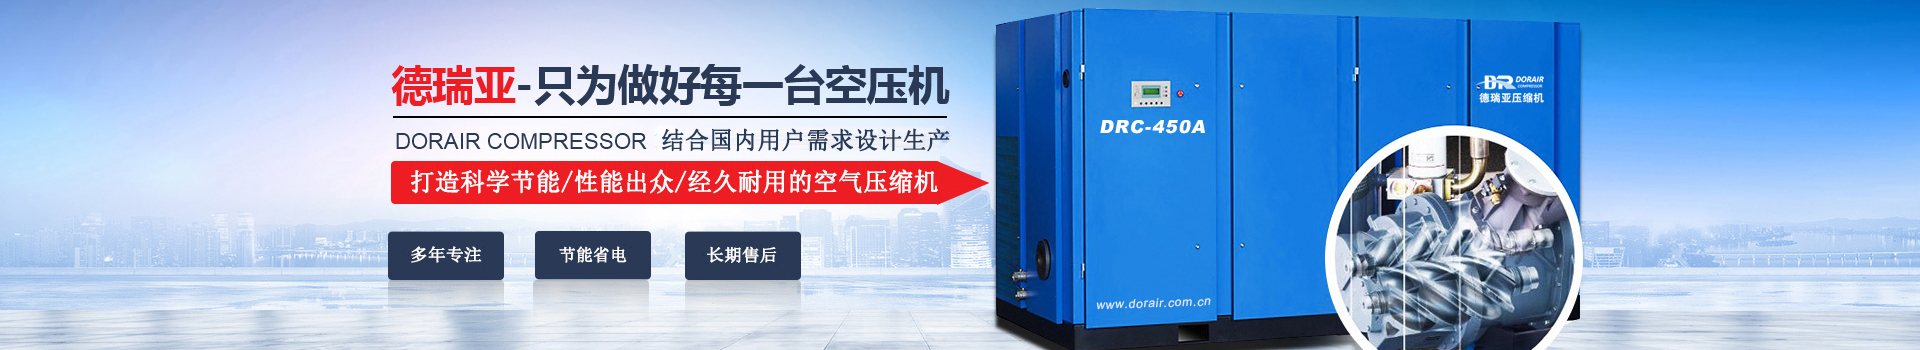 德瑞亞空壓機，中國高品質空壓機倡導者